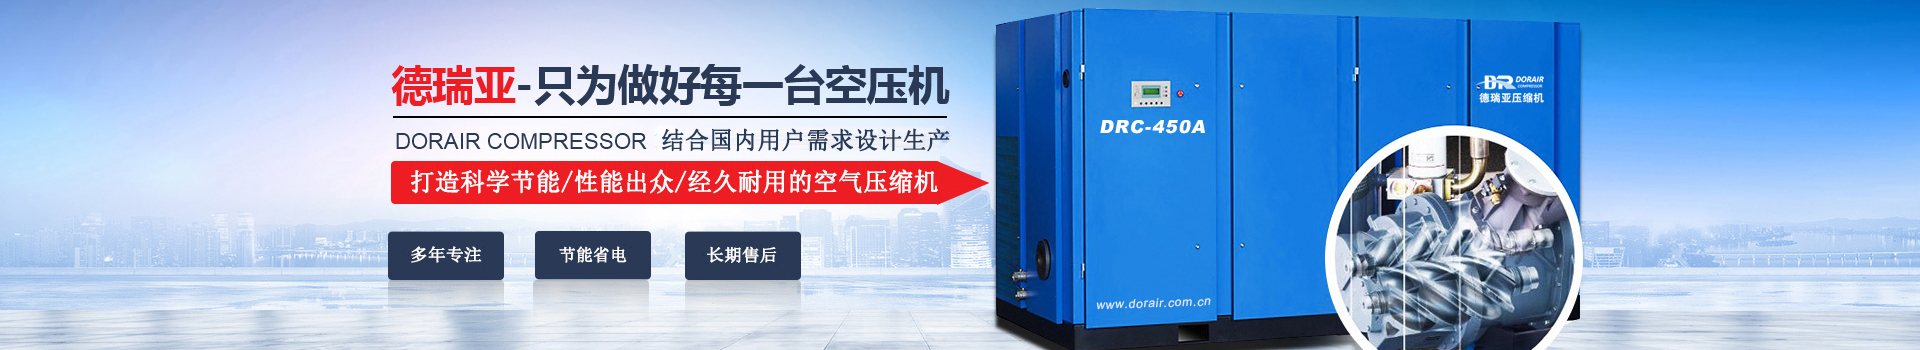 德瑞亞空壓機，中國高品質空壓機倡導者